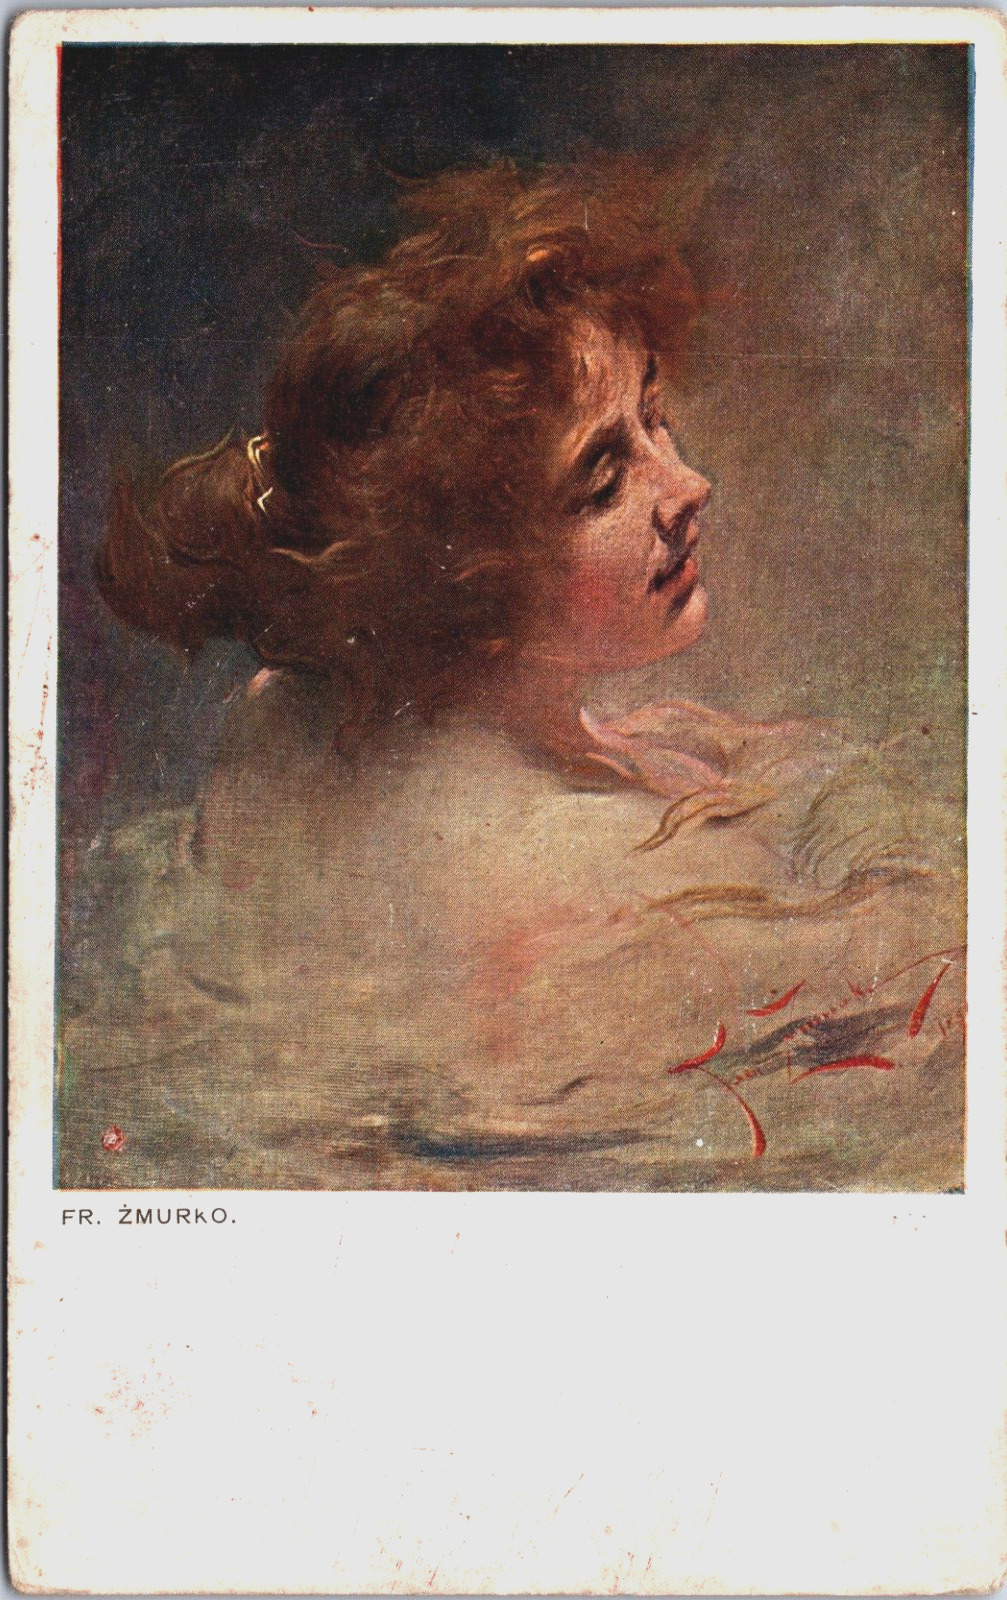 Lady FR. Zmurko Art Nouveau Vintage Postcard C170